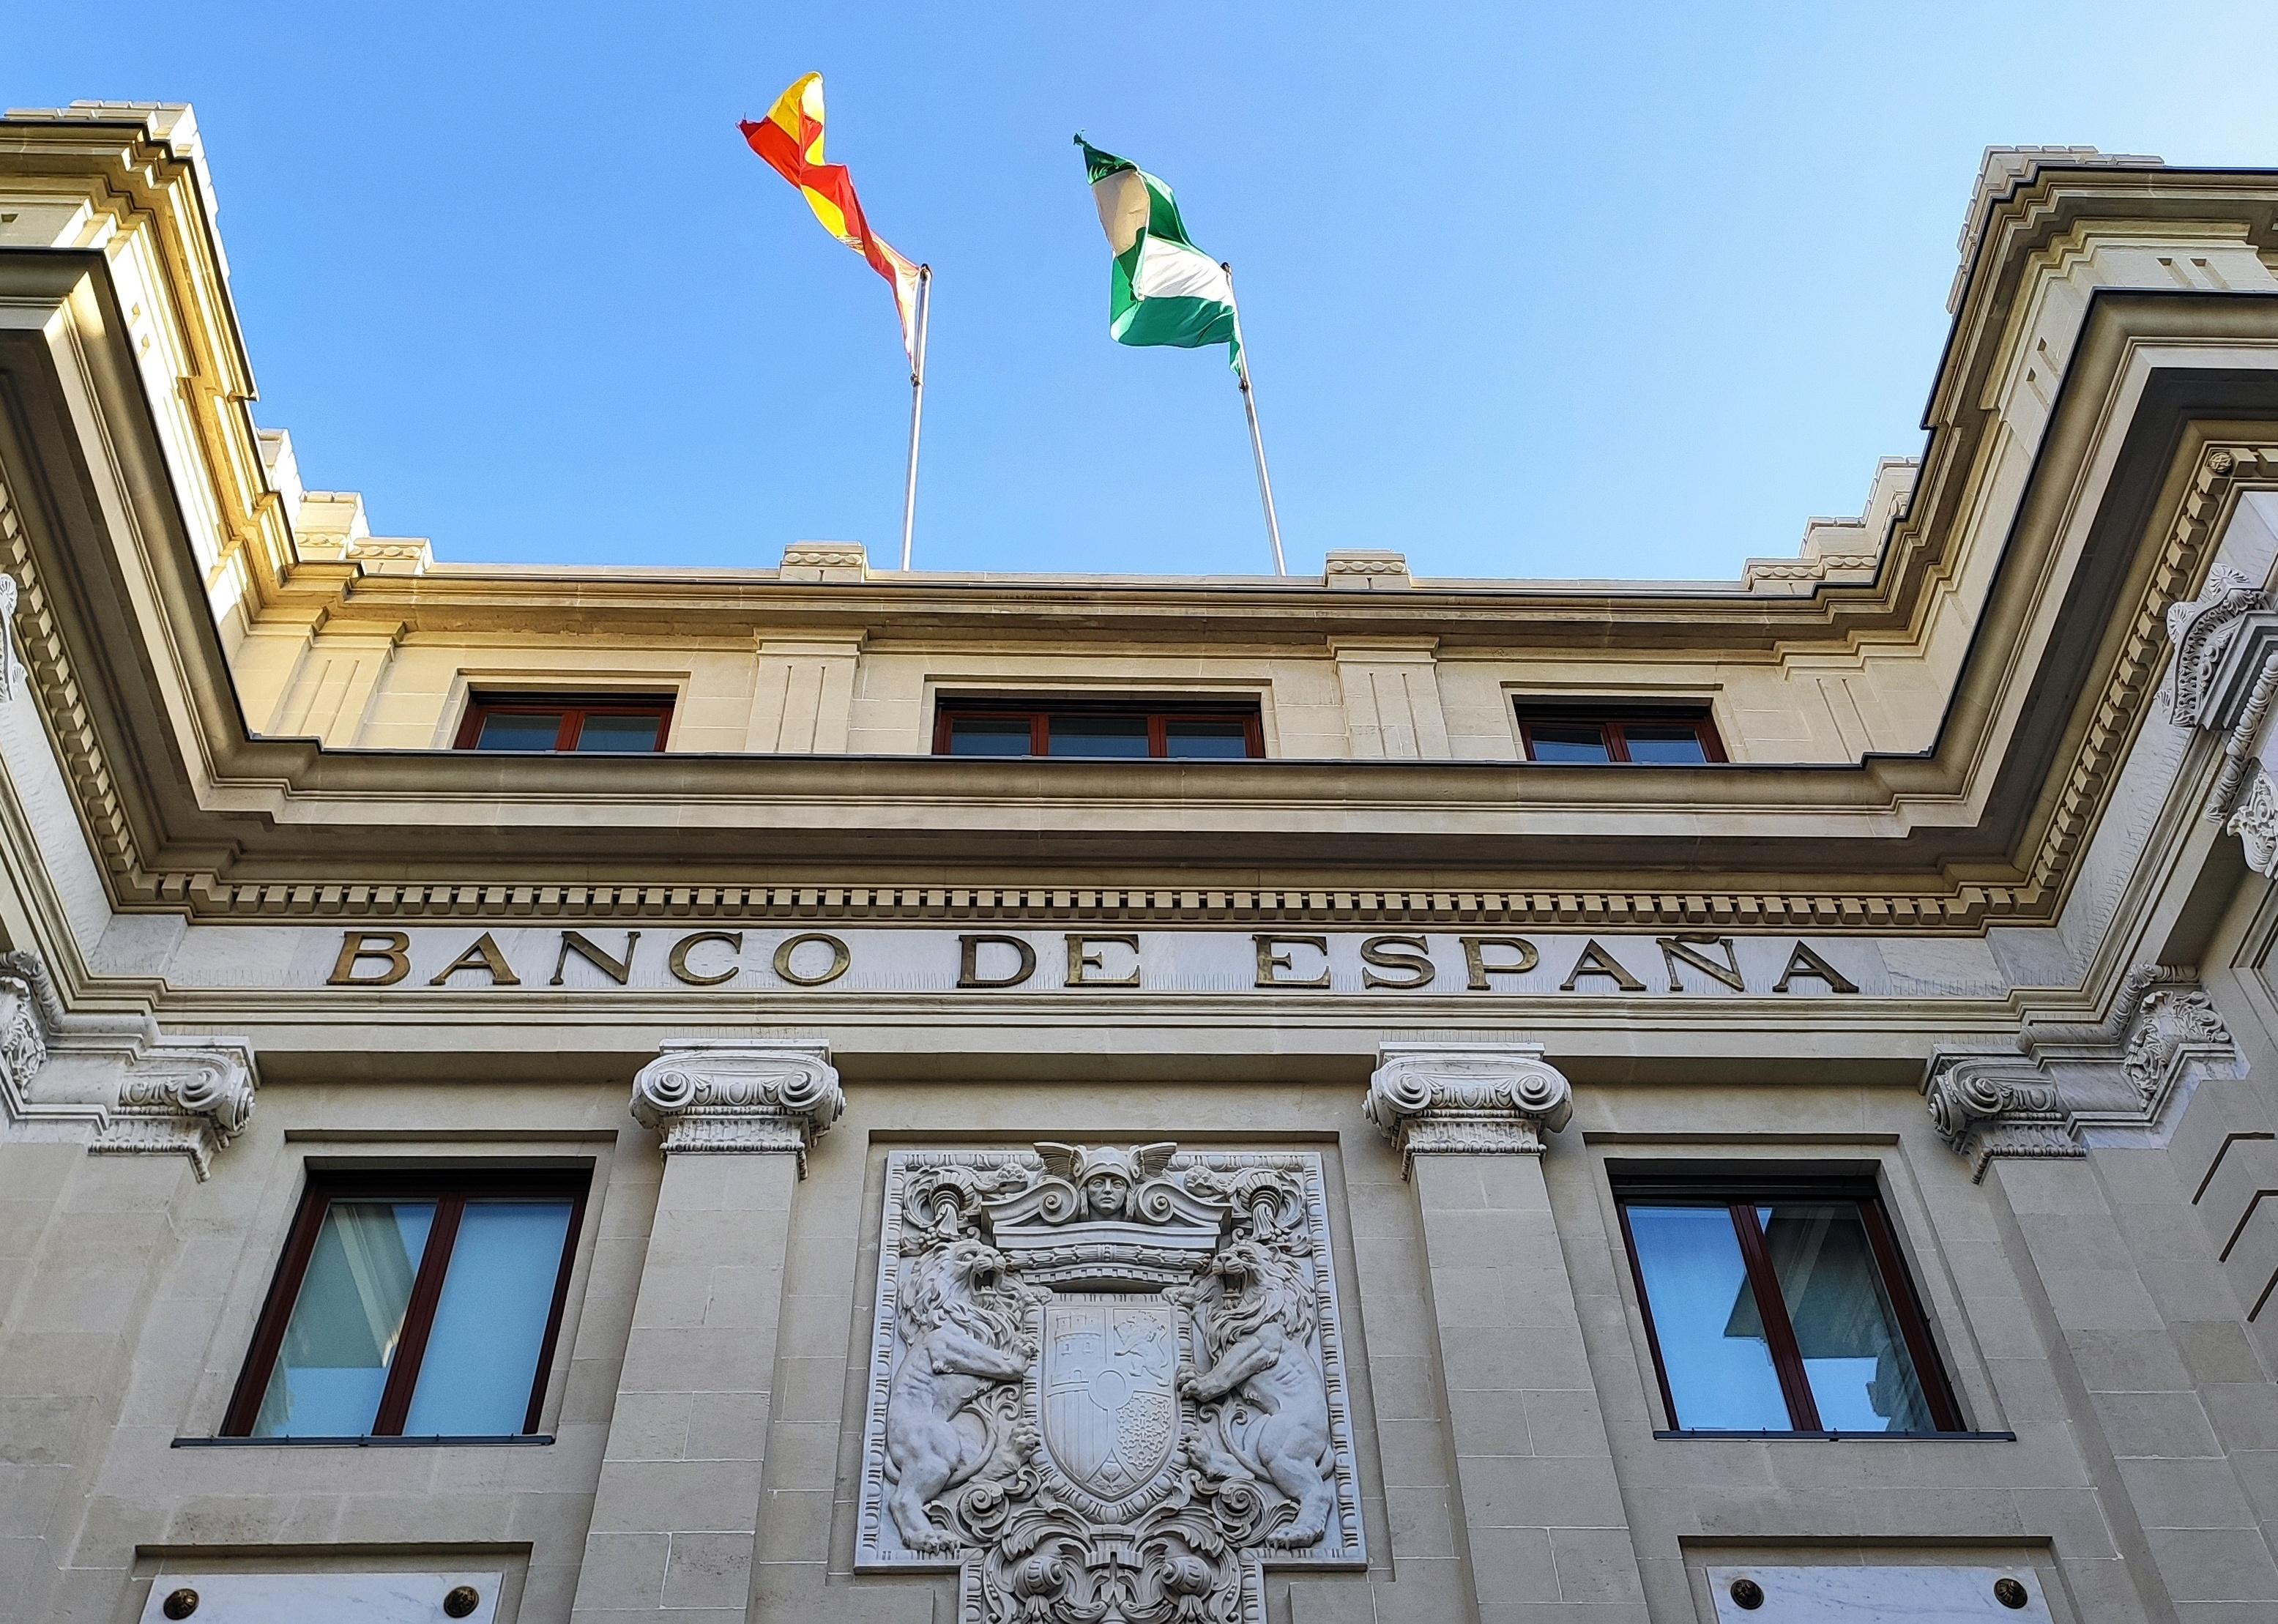 The facade of Banco de Espana